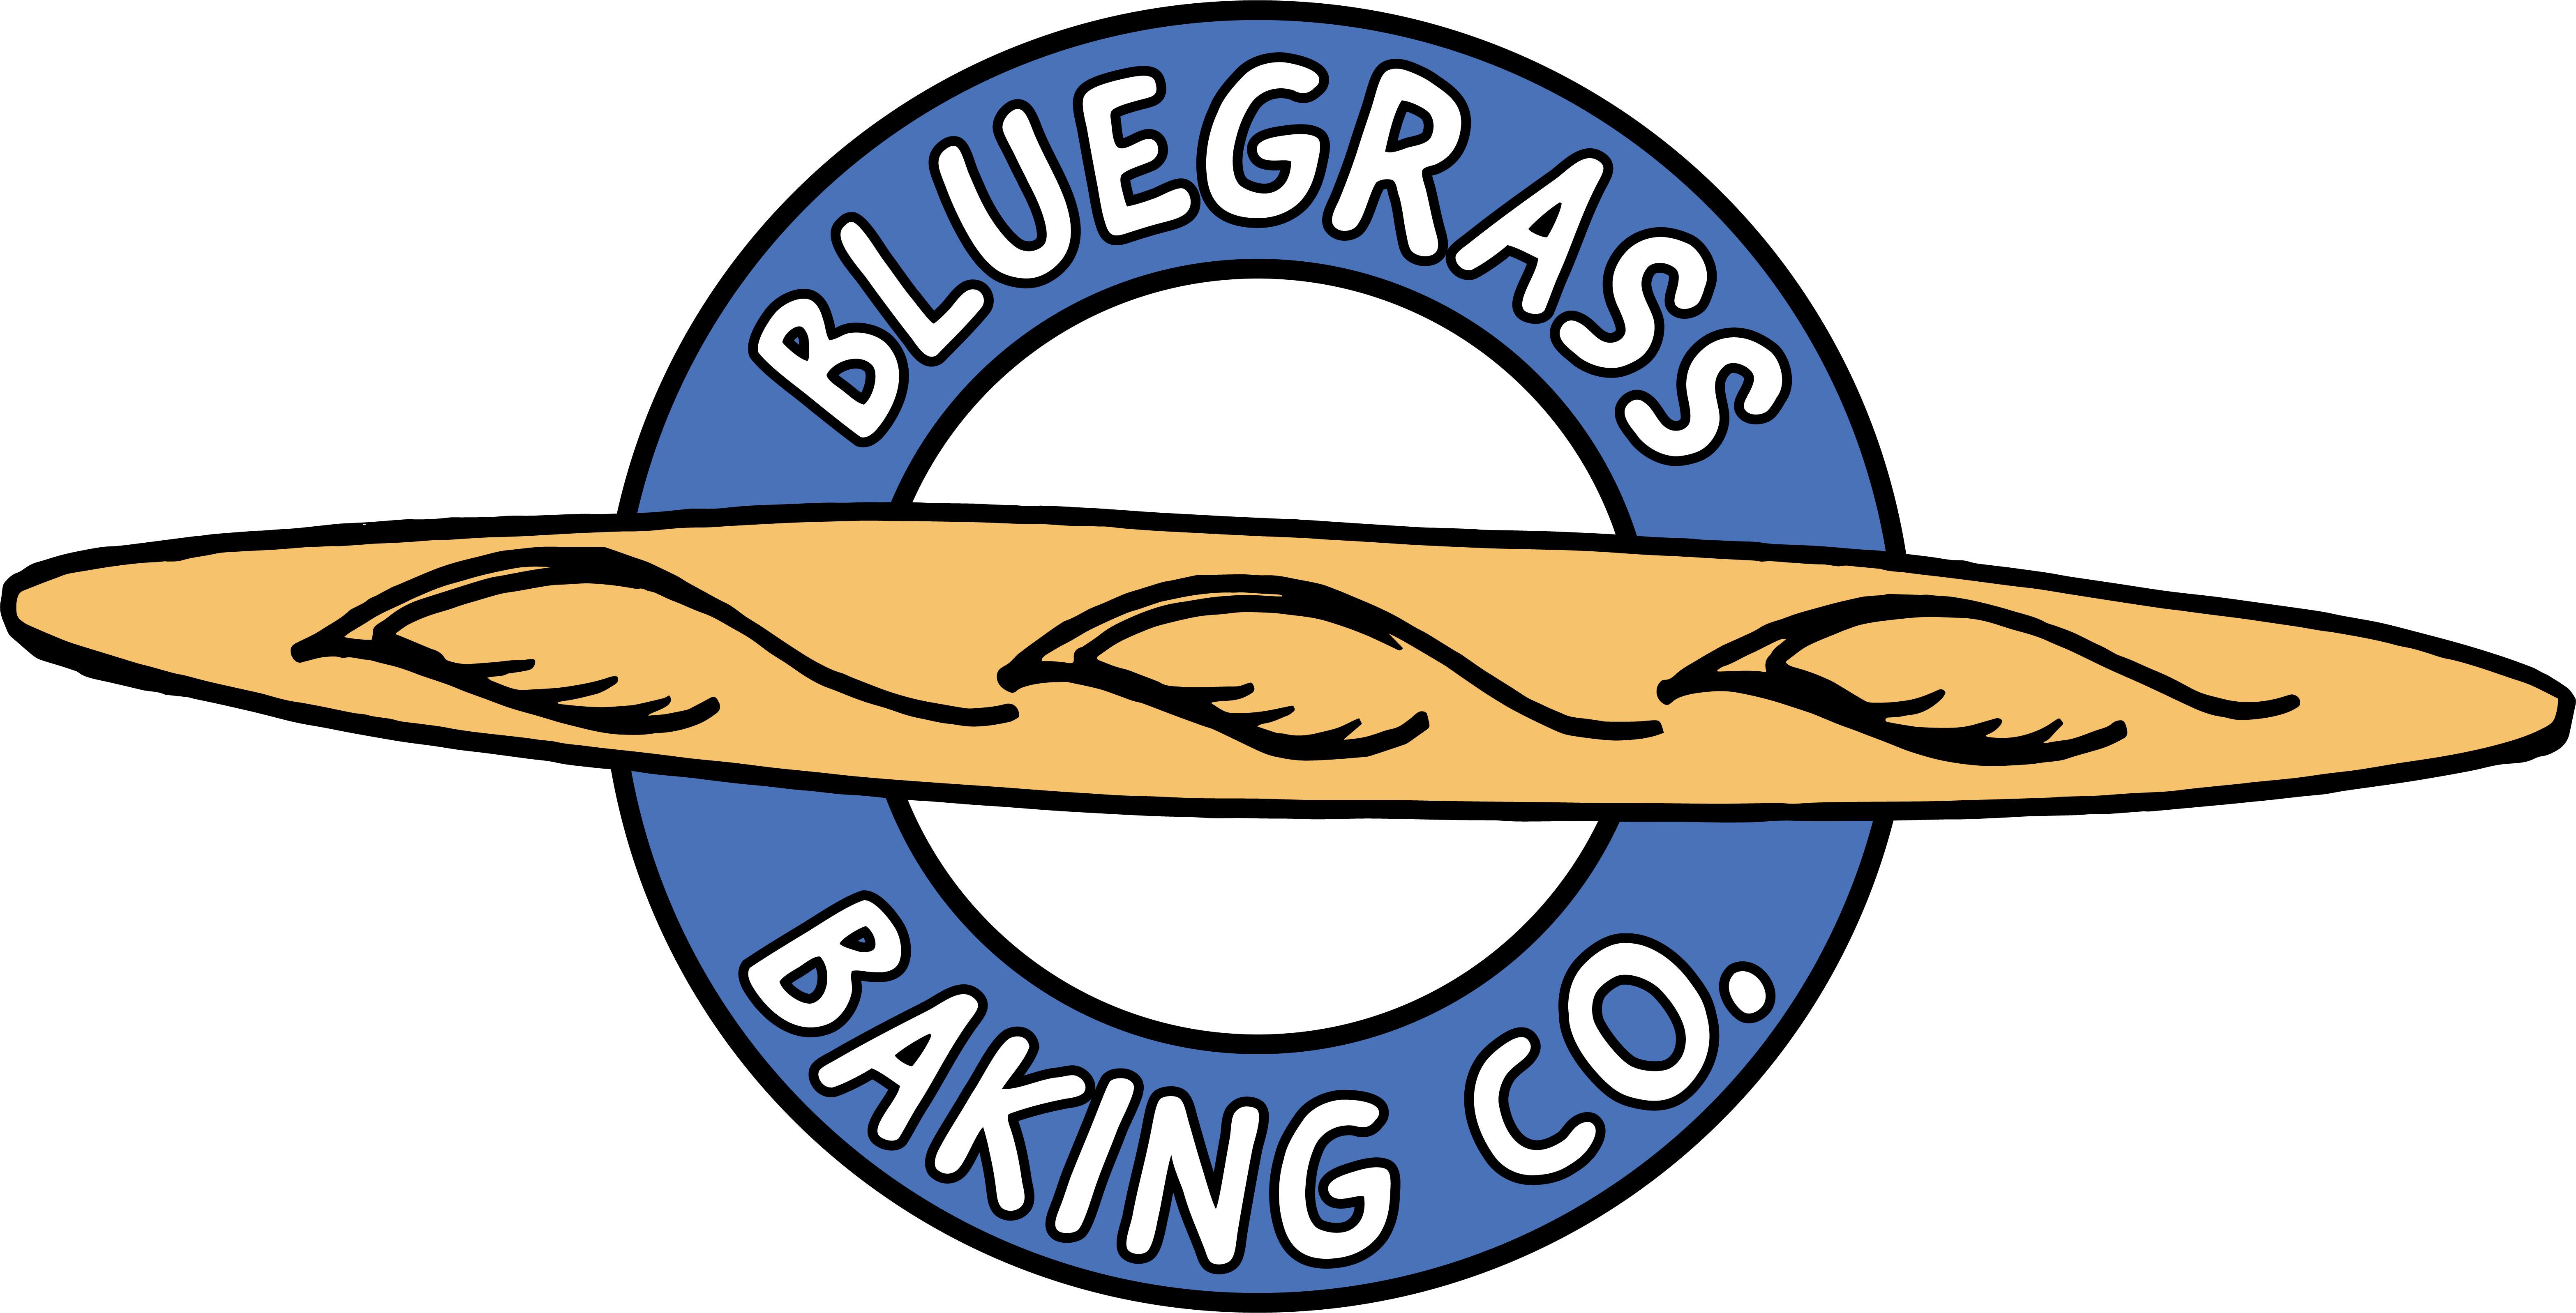 Bluegrass Baking Co.